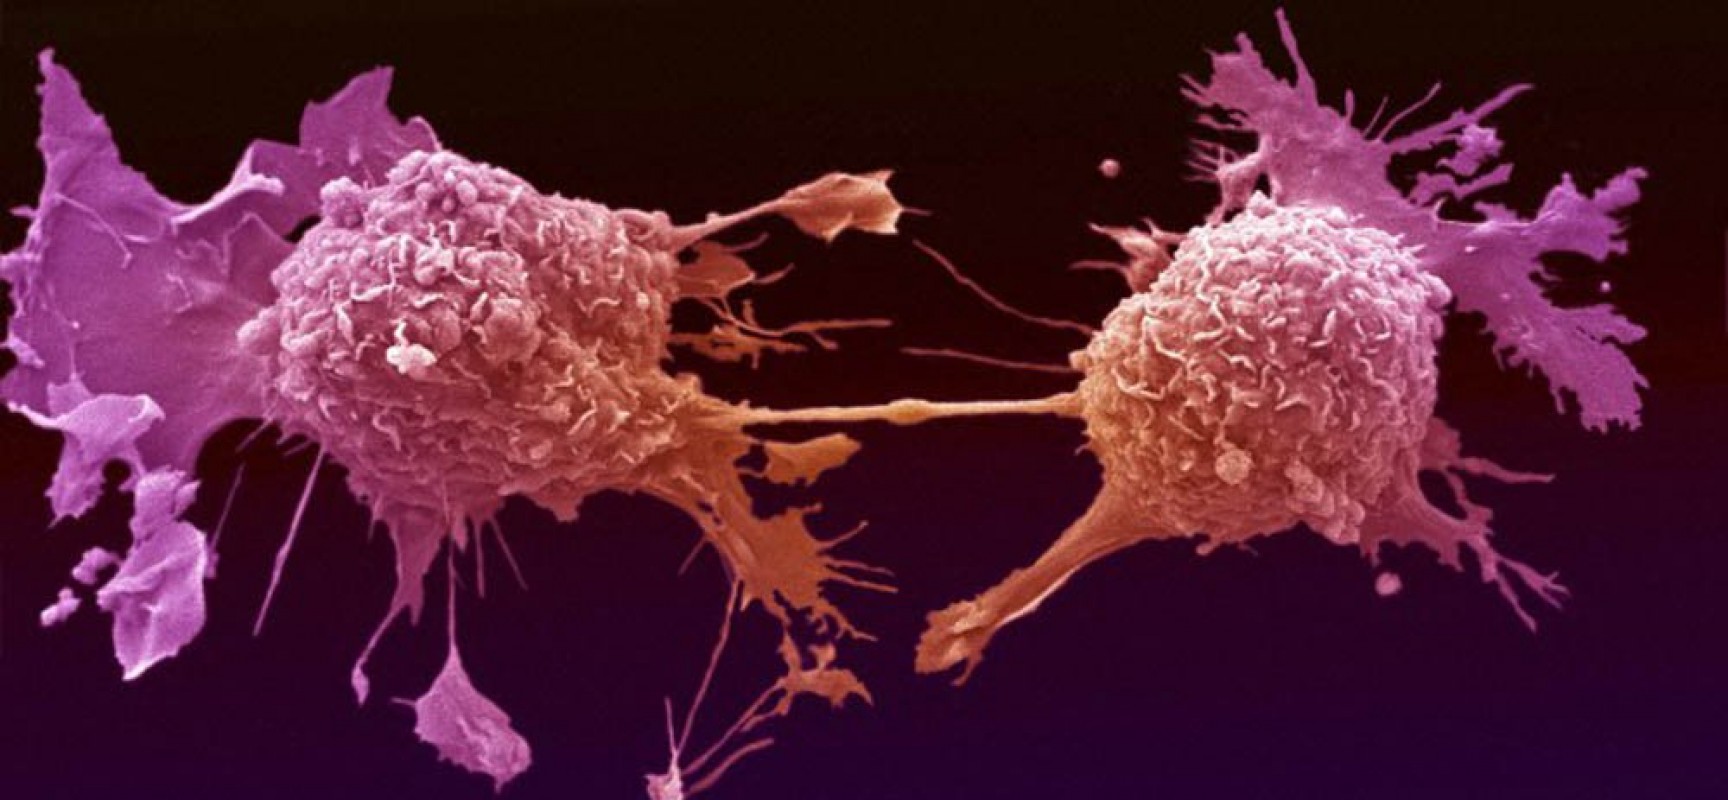 Οι μεταλλάξεις δεν προκαλούν απαραίτητα καρκίνο